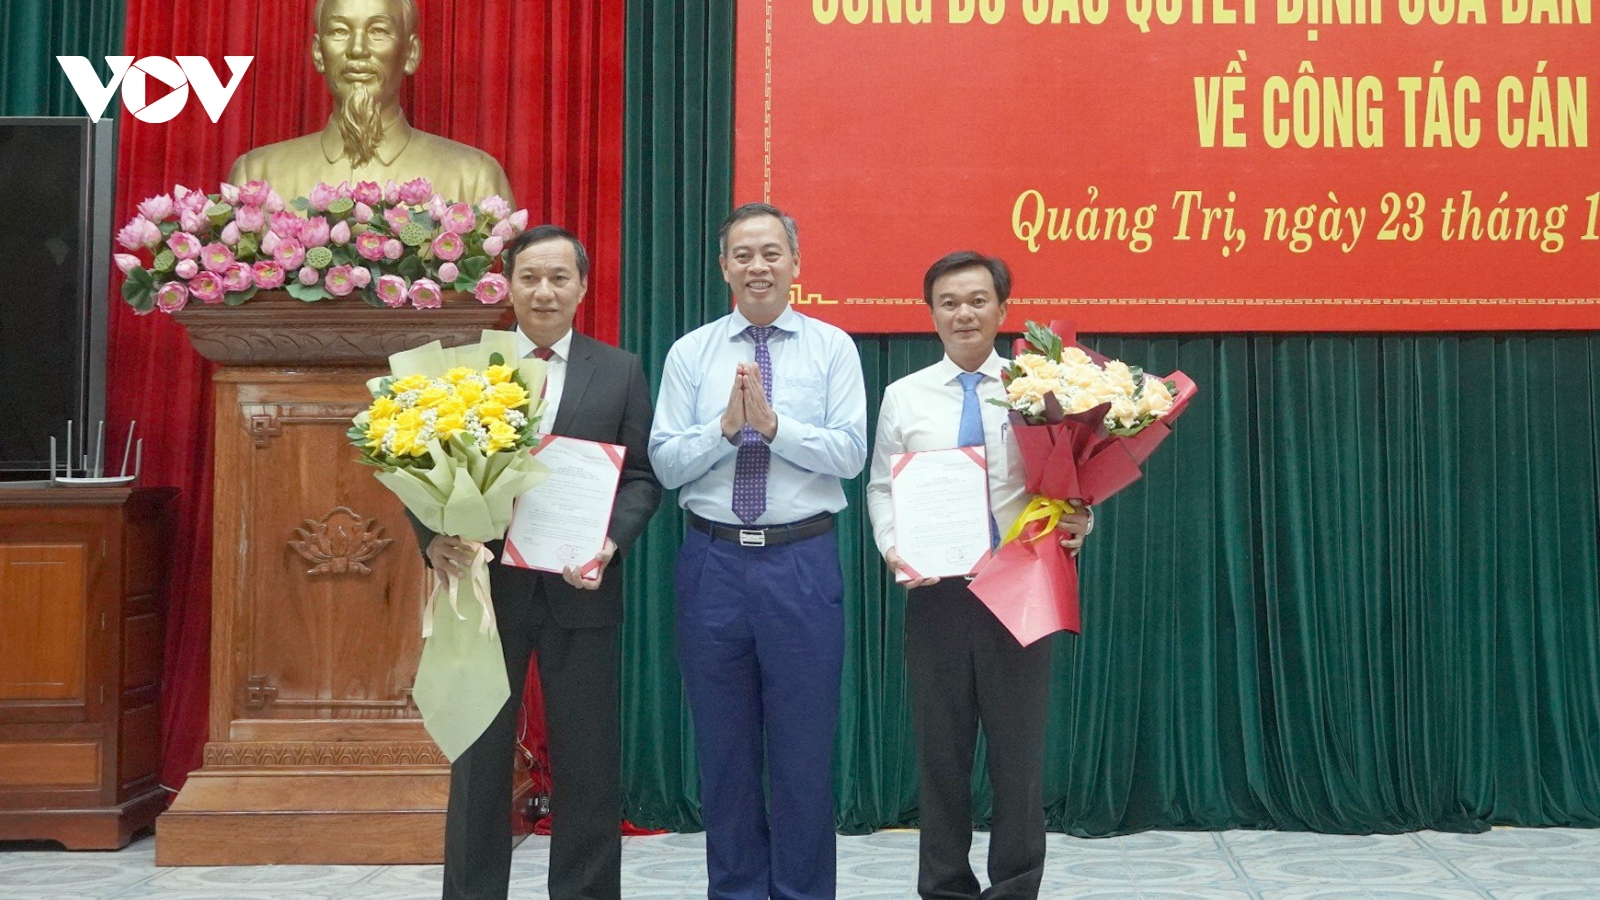 Ông Lê Quang Chiến giữ chức Bí thư Thành ủy Đông Hà, tỉnh Quảng Trị